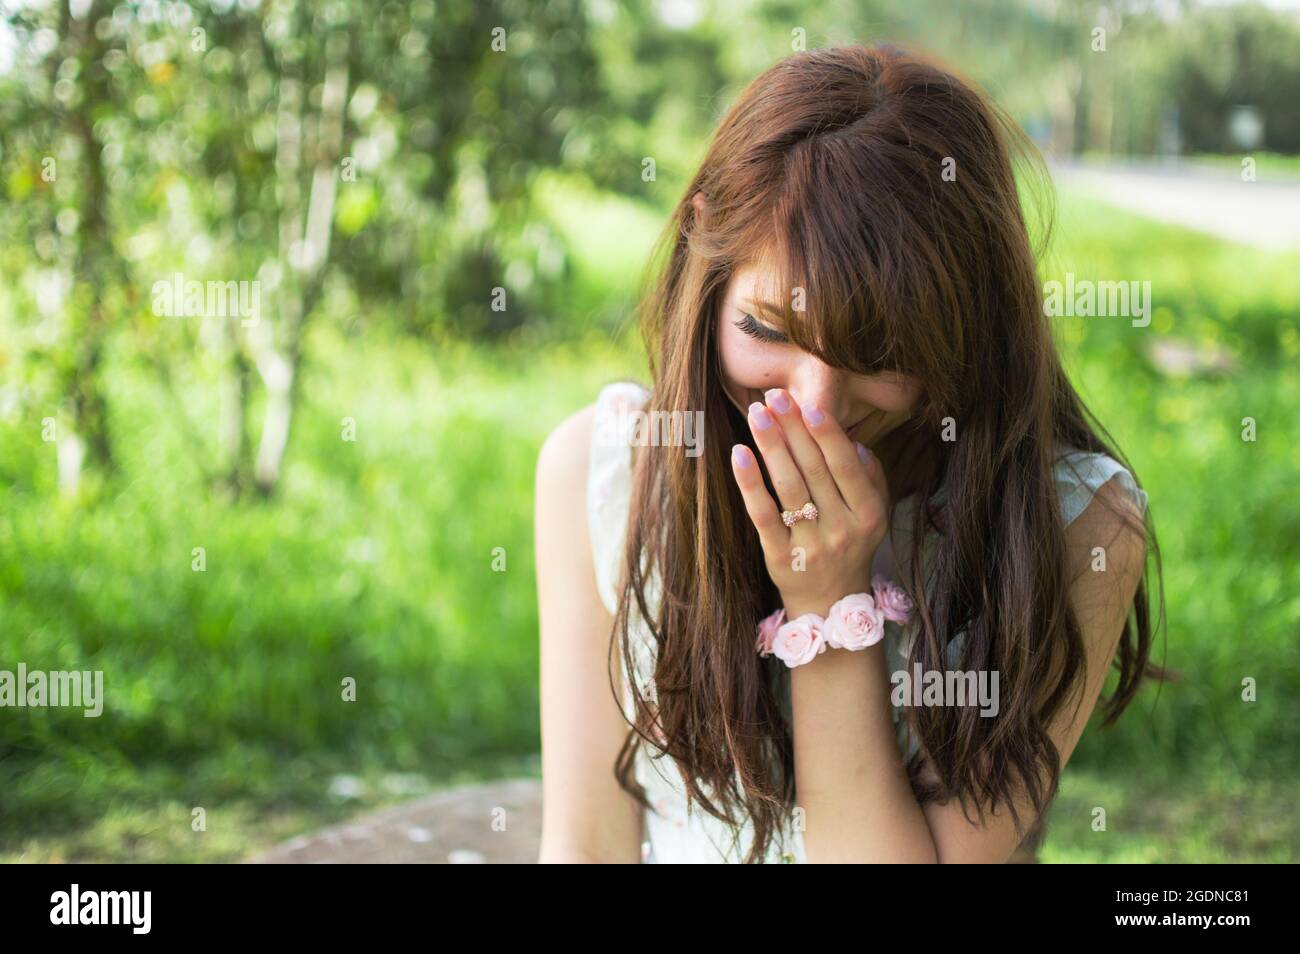 Porträt einer lächelnden und lachenden jungen Frau aus dem Nahen Osten in einem Park Stockfoto